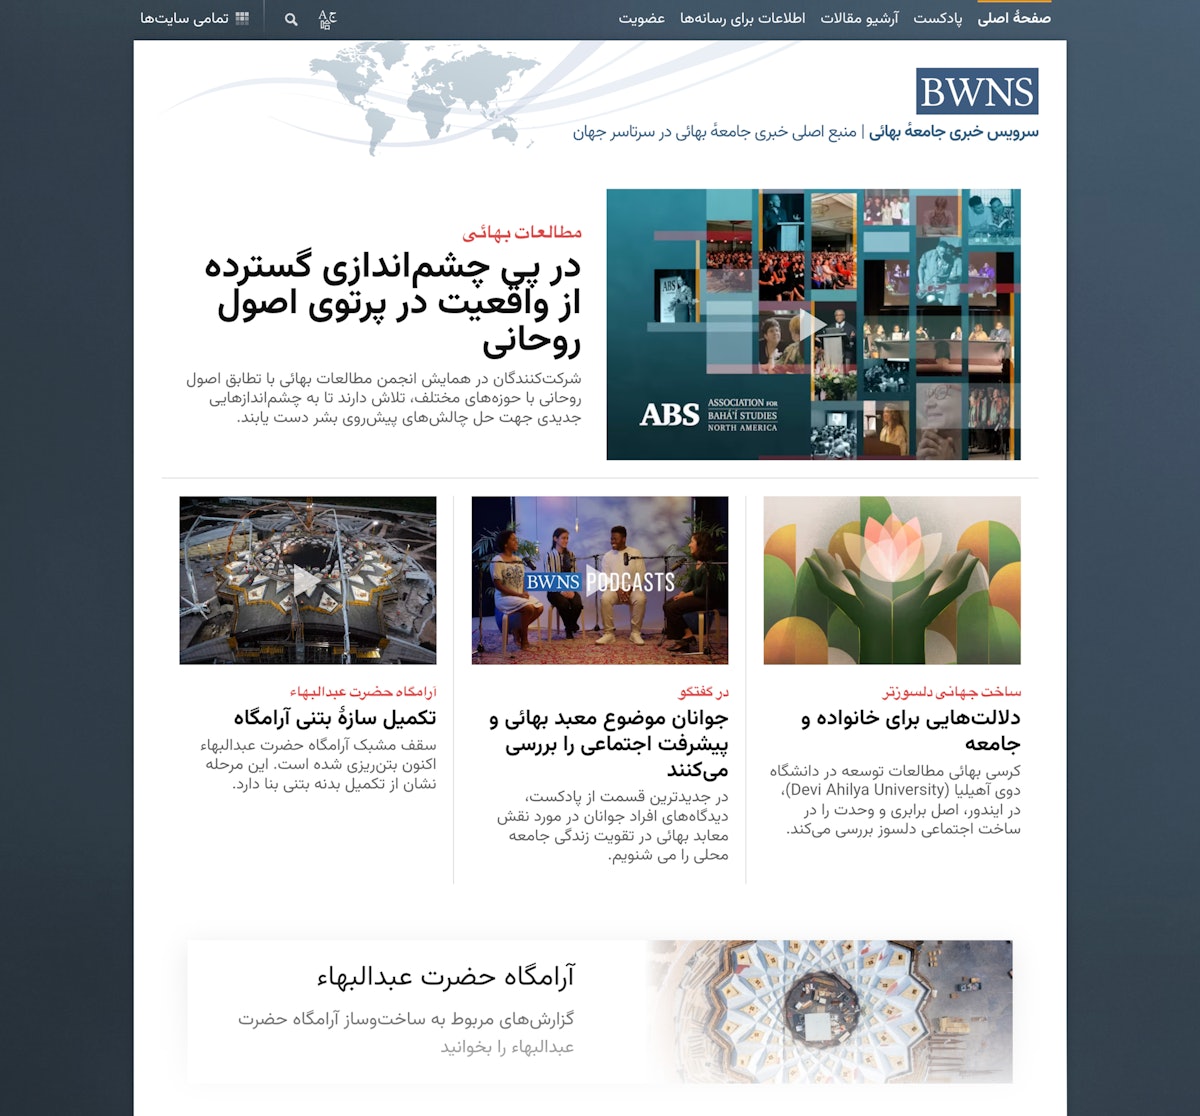 La page d’accueil du nouveau site web du BWNS en langue persane.